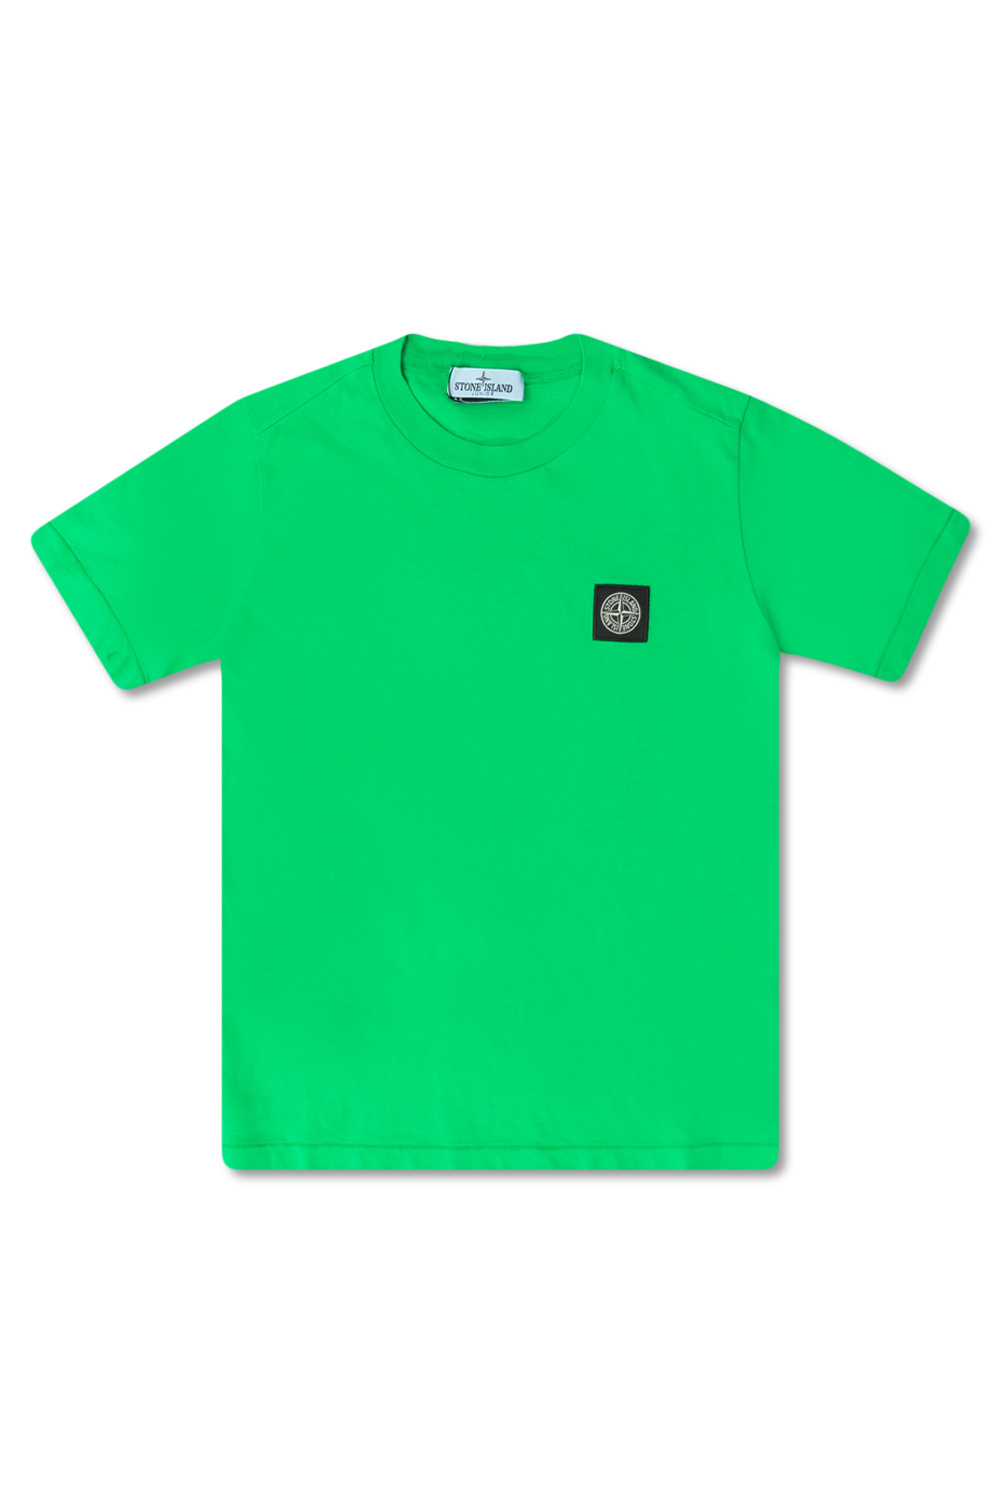 Nike sportswear air huarache white scream green royal blue 318429-100 mens 11 Logo T-shirt